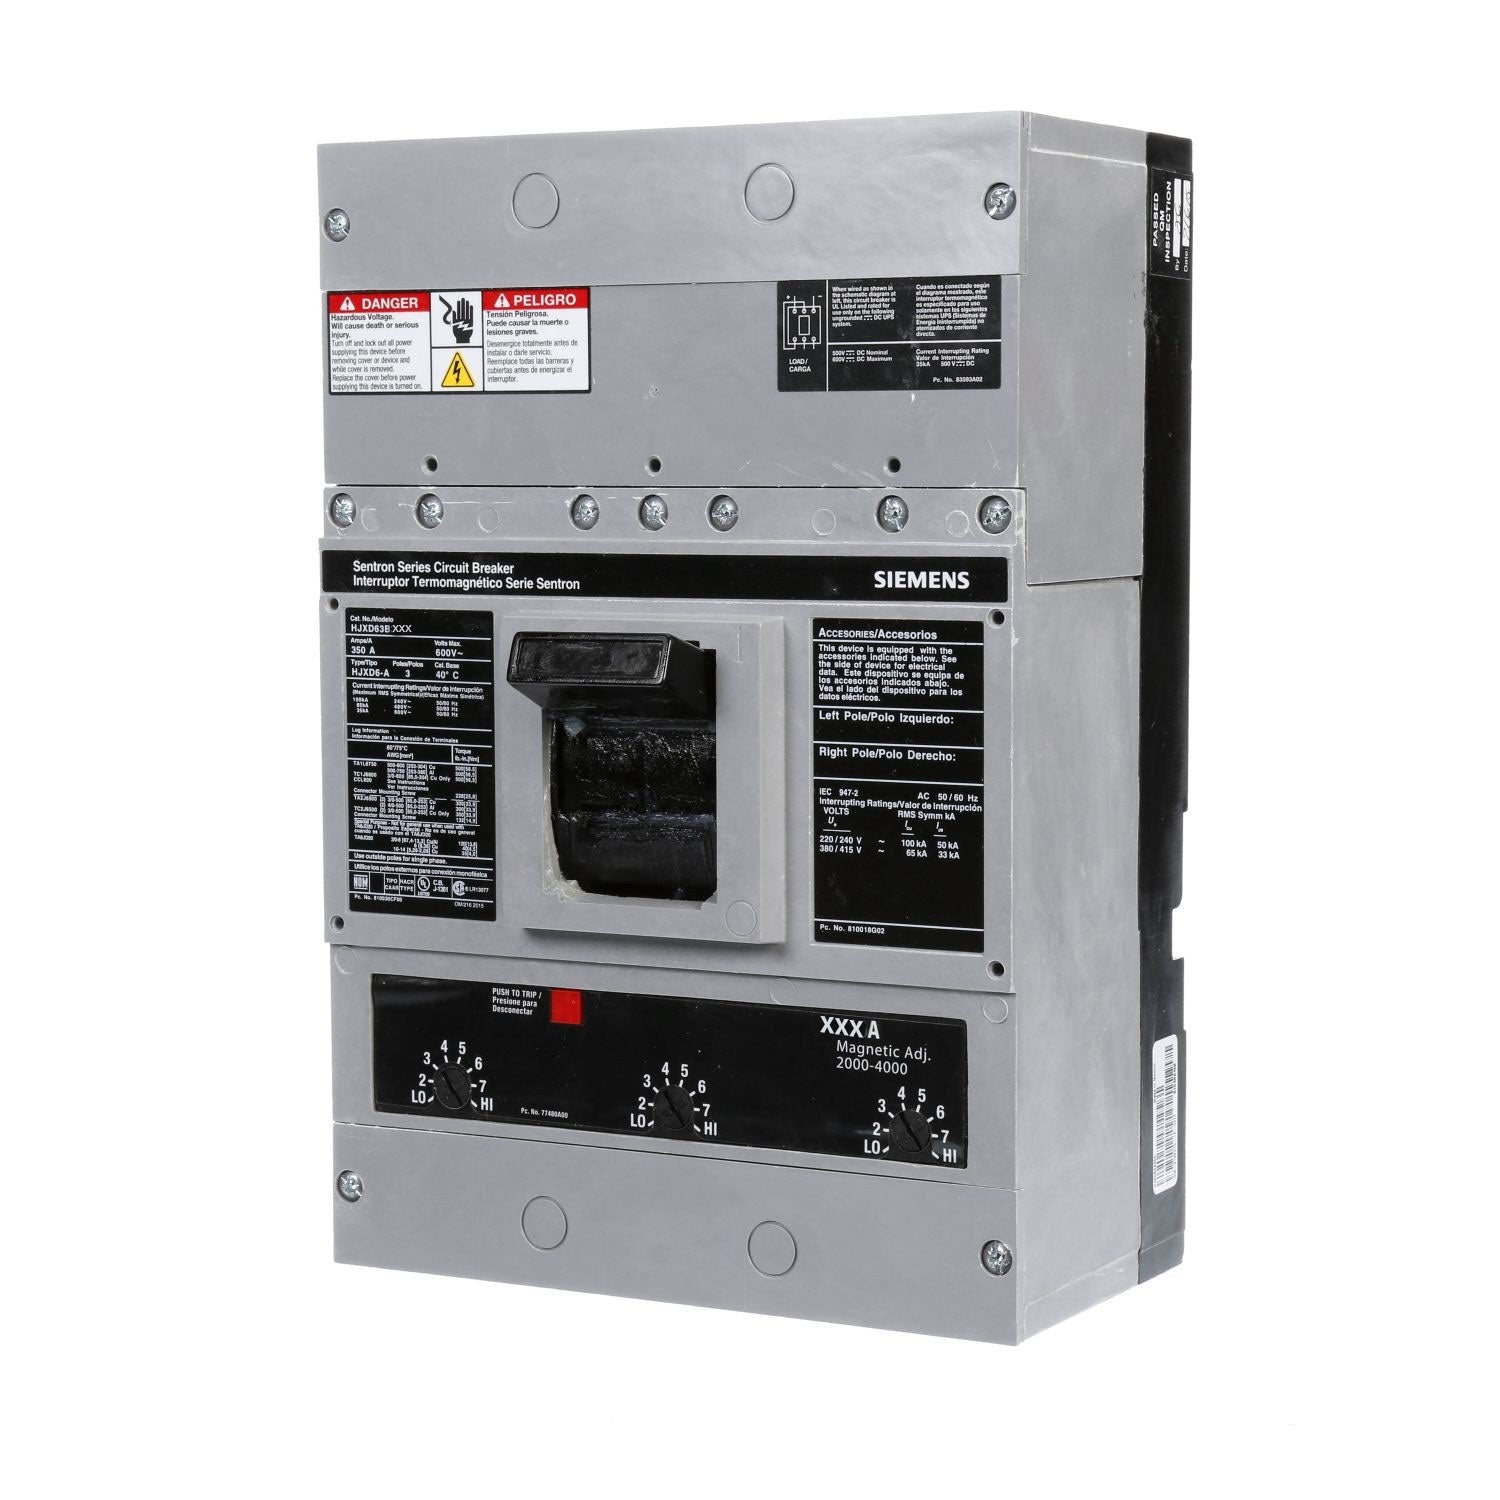 HJXD63B225 - Siemens - Molded Case Circuit Breaker